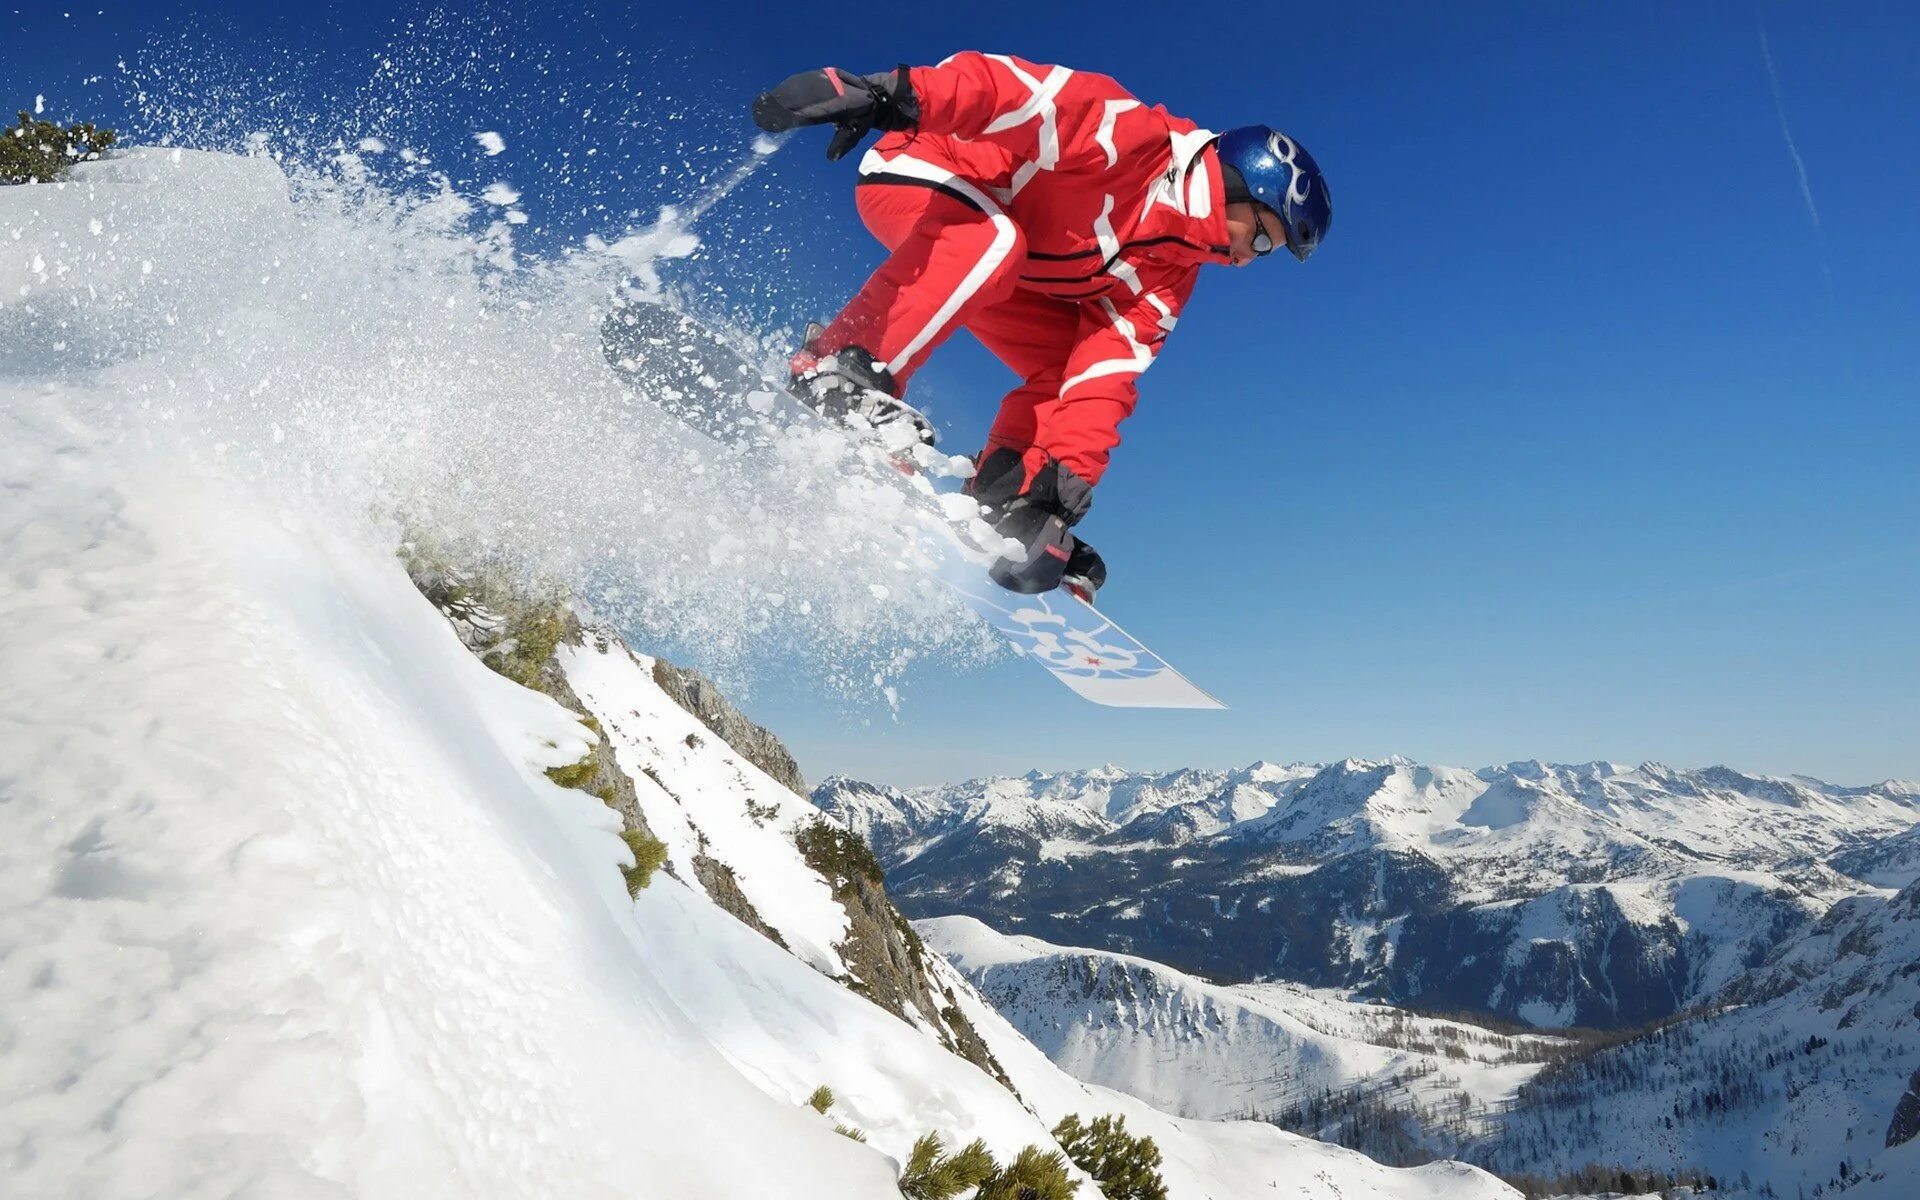 Горнолыжник Шон Уайт. Шон Вайт сноубординг лавина. Зимний спорт. Горы сноуборд. Skiing snowboarding